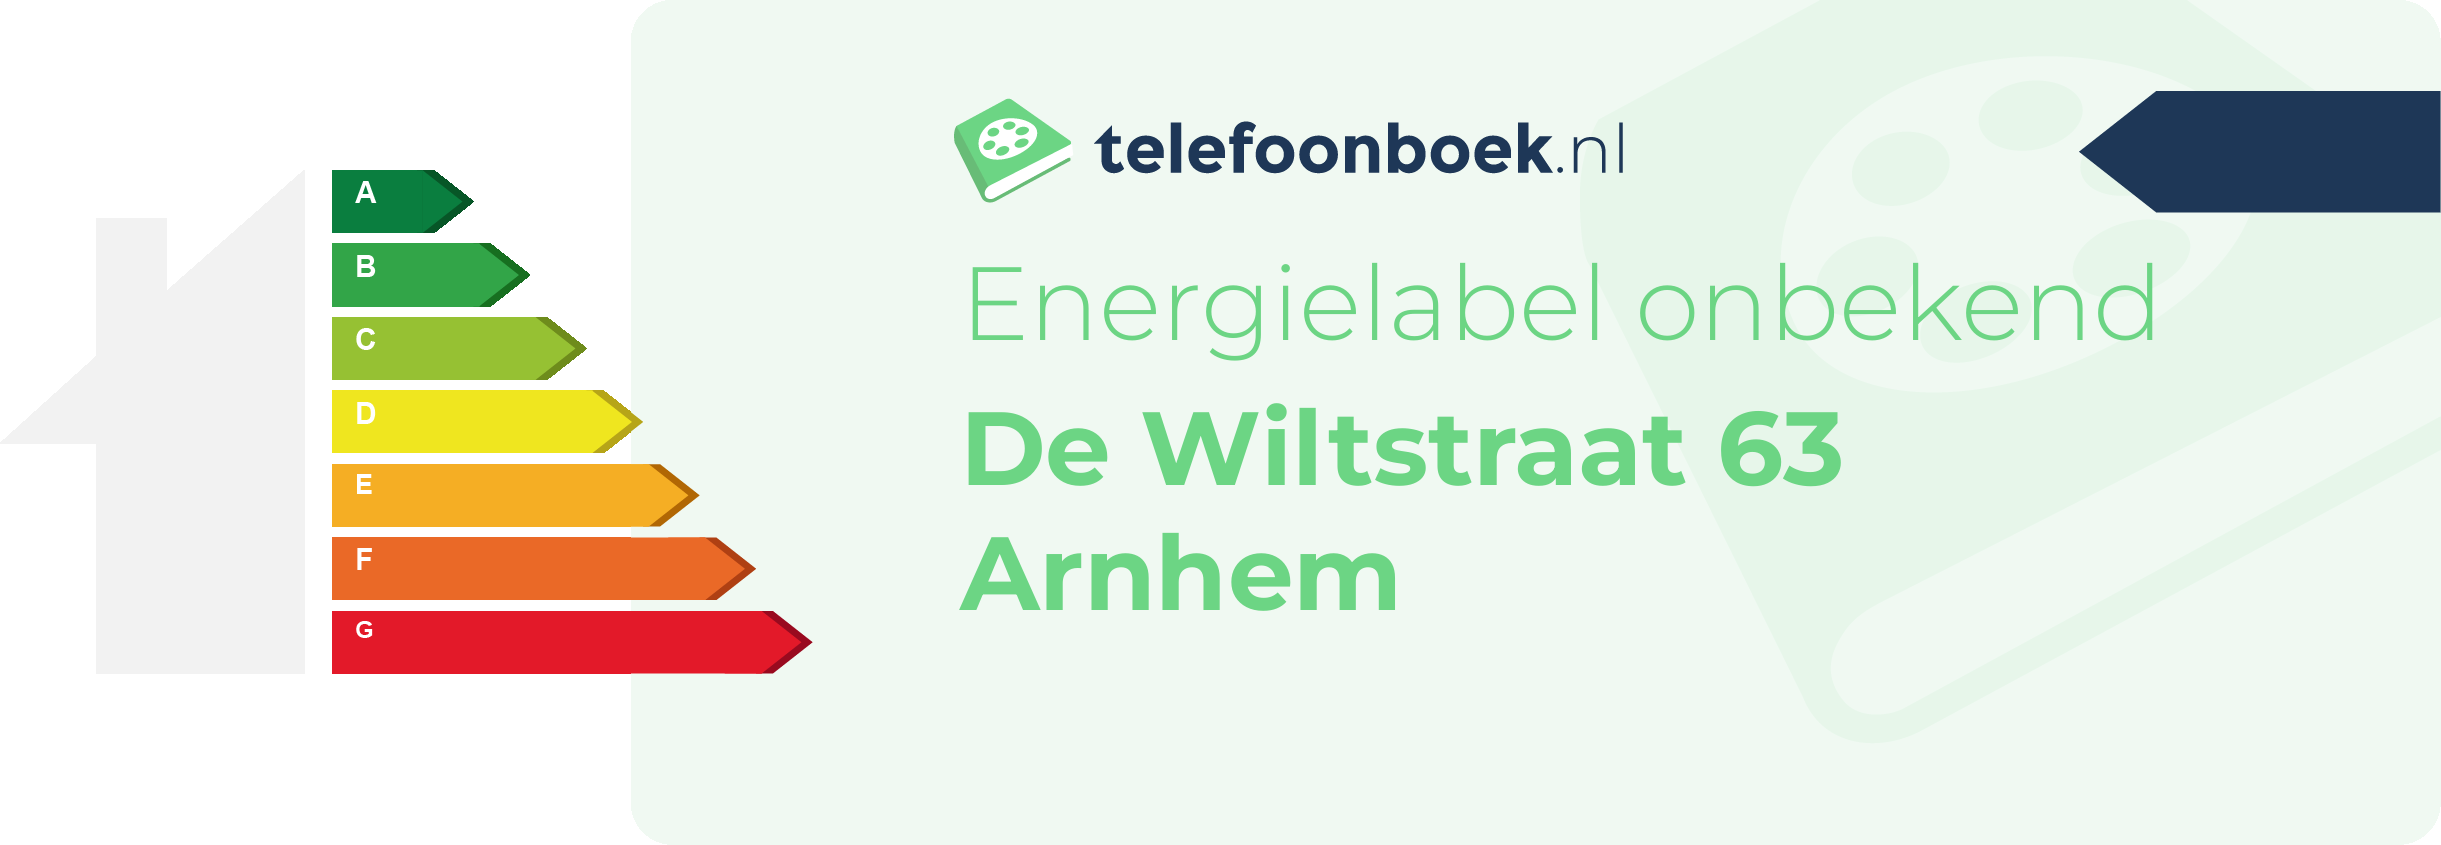 Energielabel De Wiltstraat 63 Arnhem